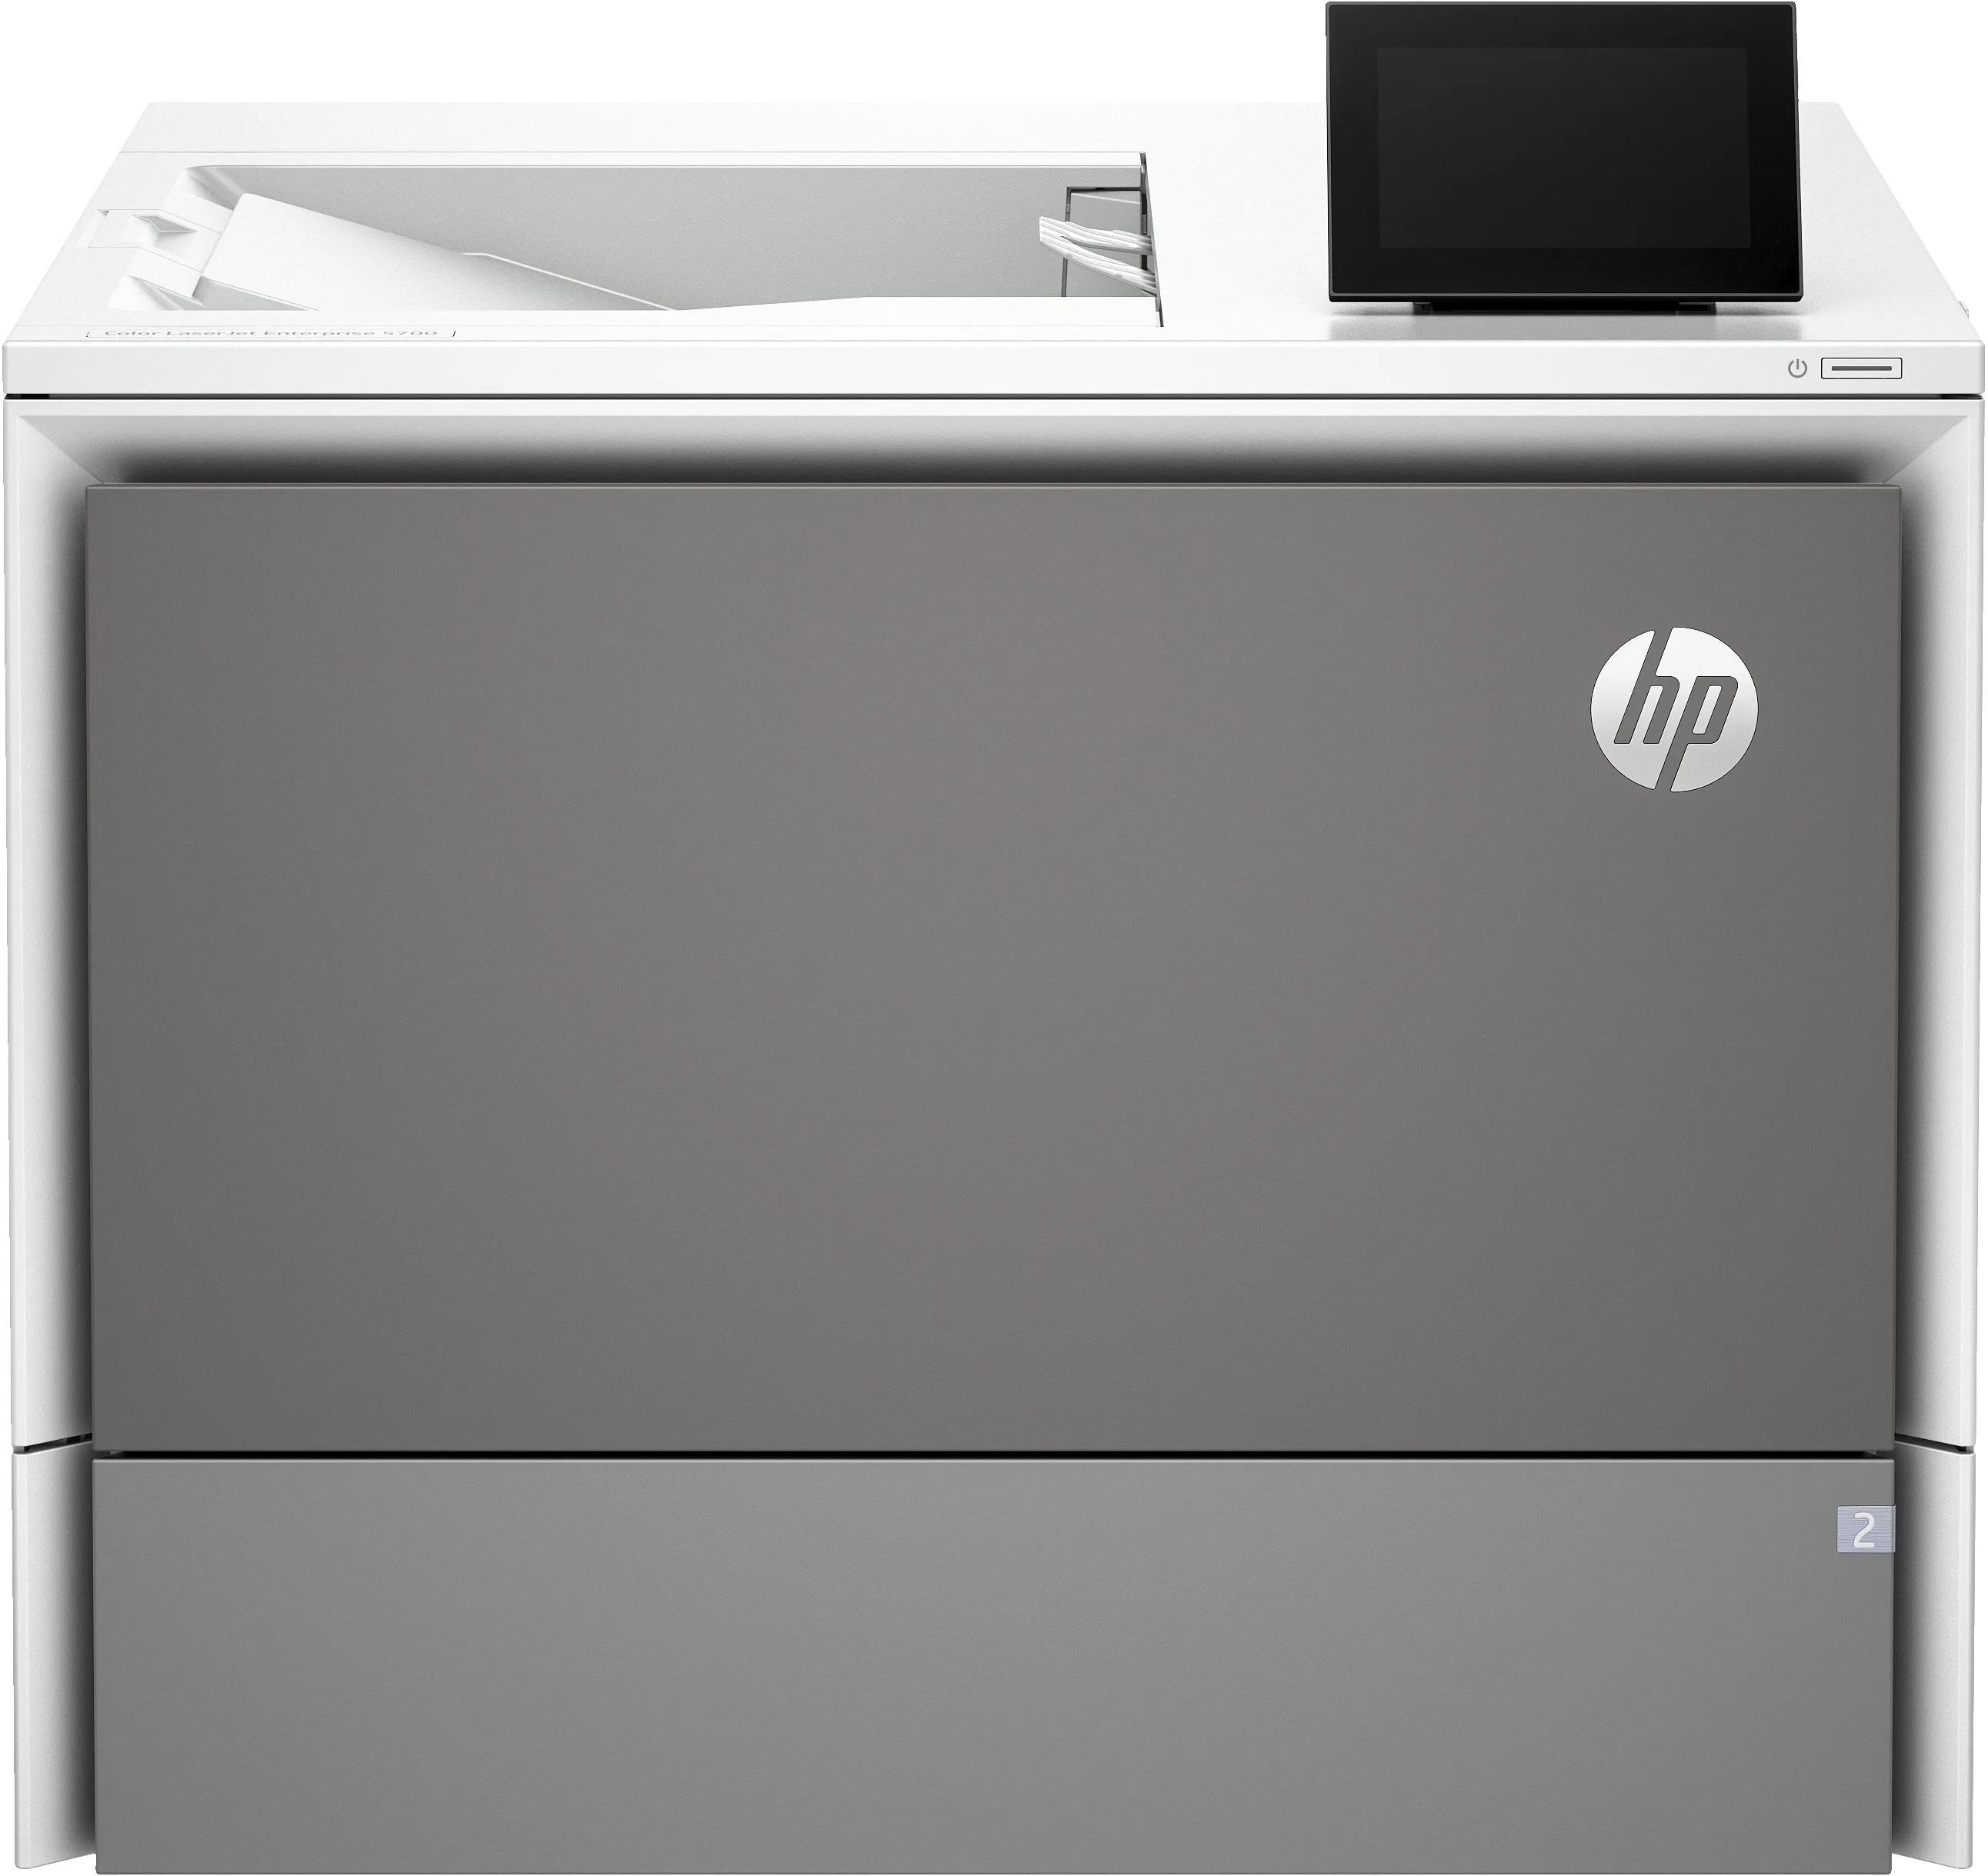 Achat HP Clr LaserJet Gray Storage Stand et autres produits de la marque HP